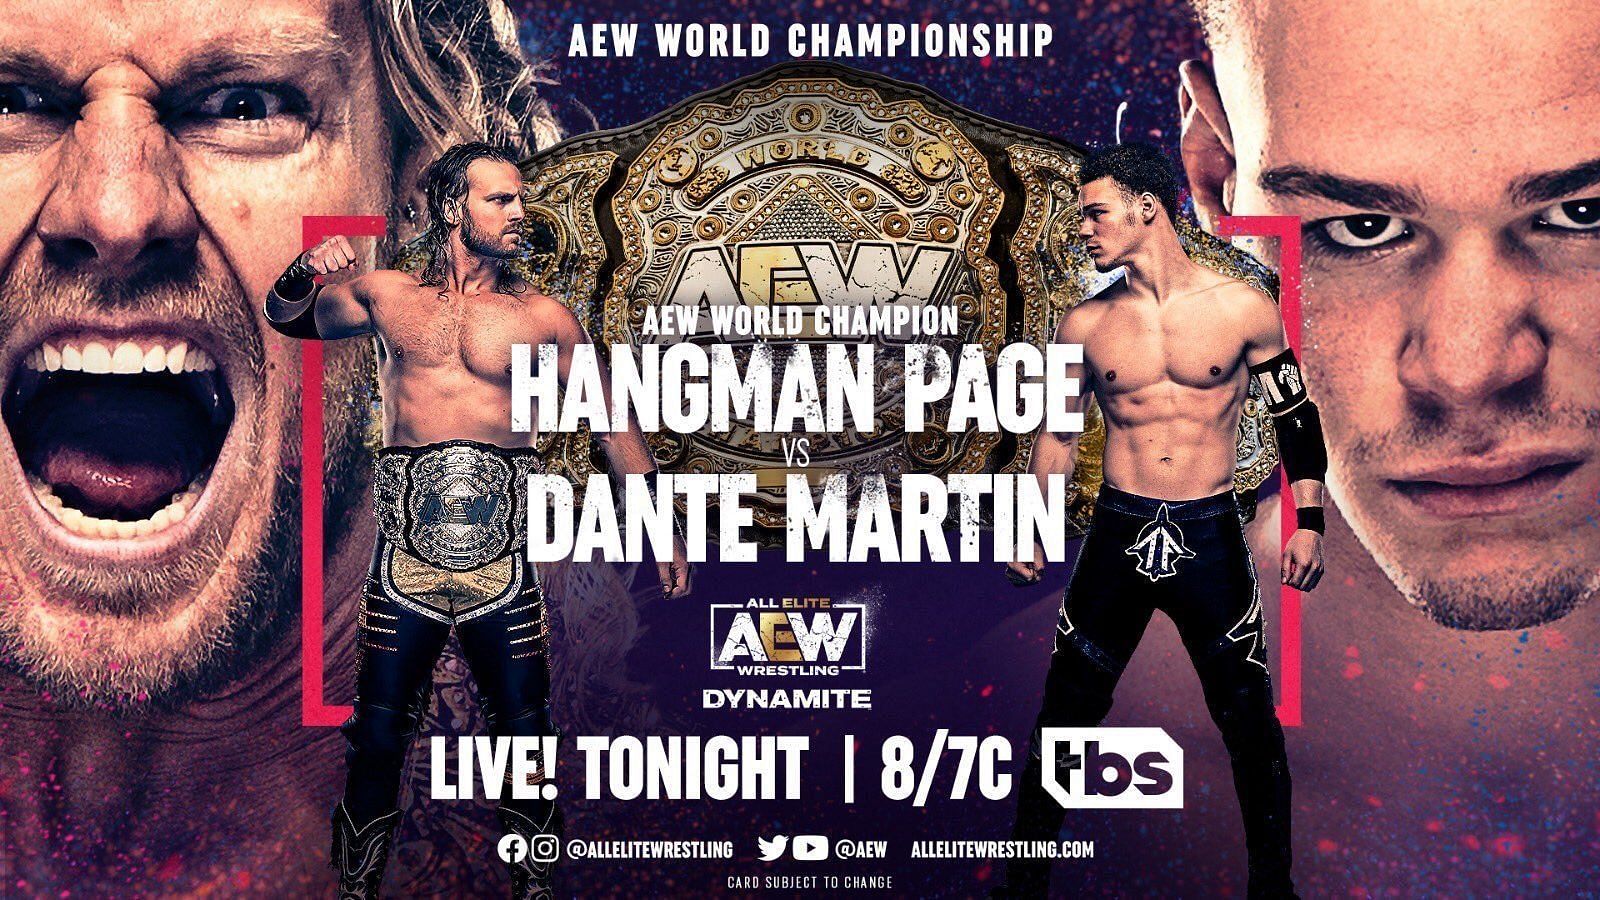 Dante Martin vs. Hangman Page on AEW Dynamite